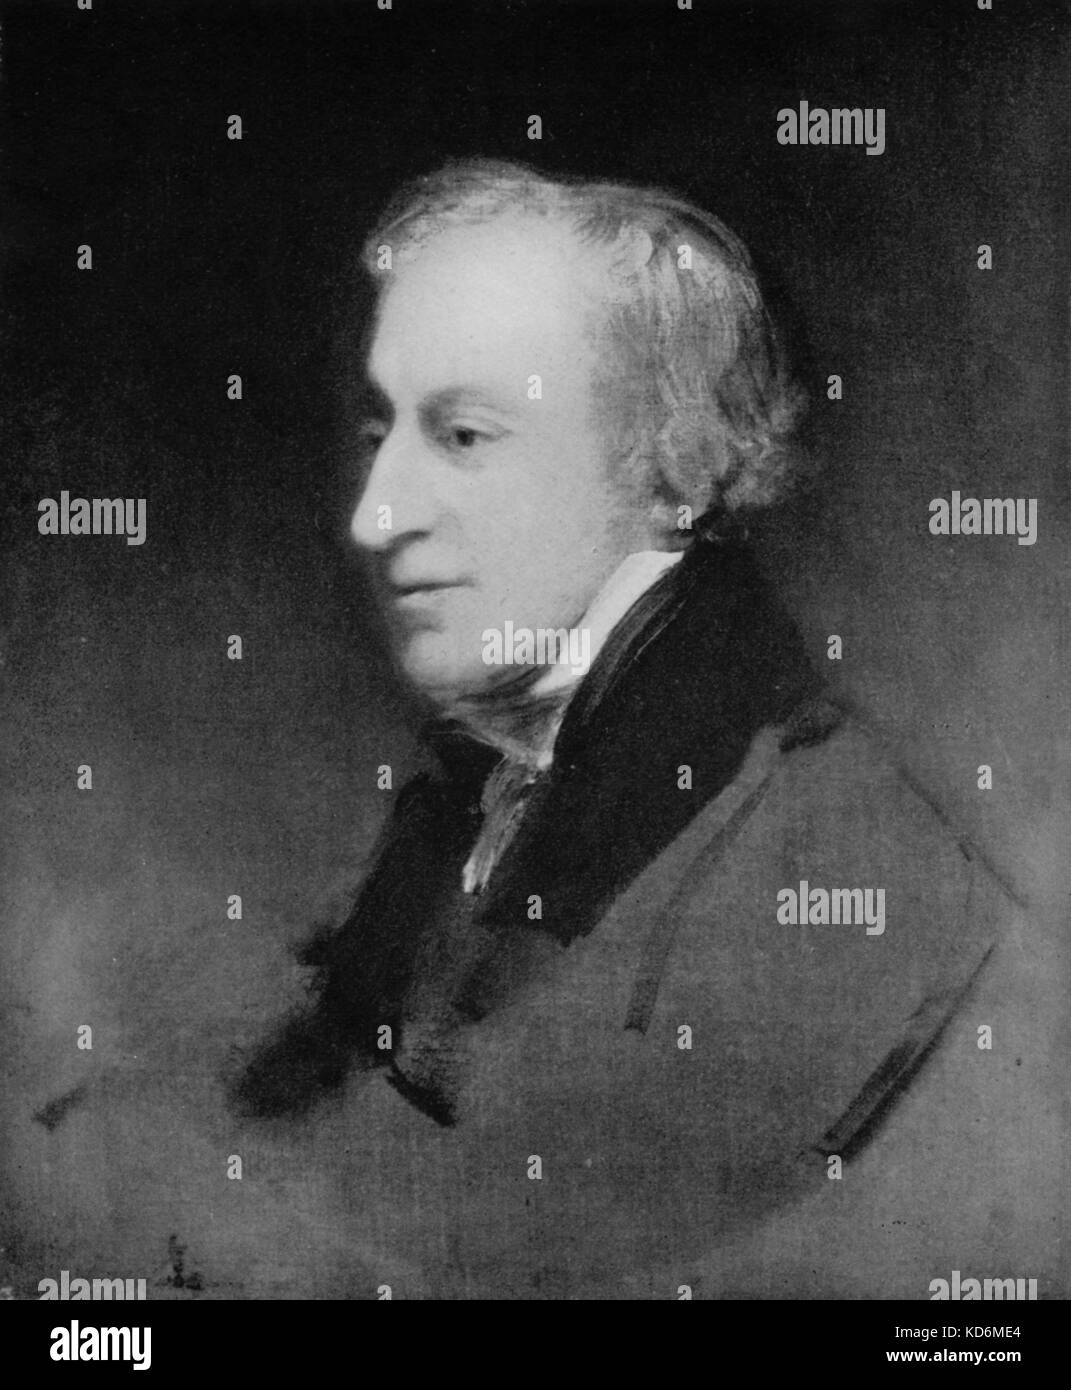 Samuel Wesley - Porträt von J.Jackson. Englischer Organist, Komponist und Dirigent. 24 Februar 1766 - 11. Oktober 1837. Stockfoto